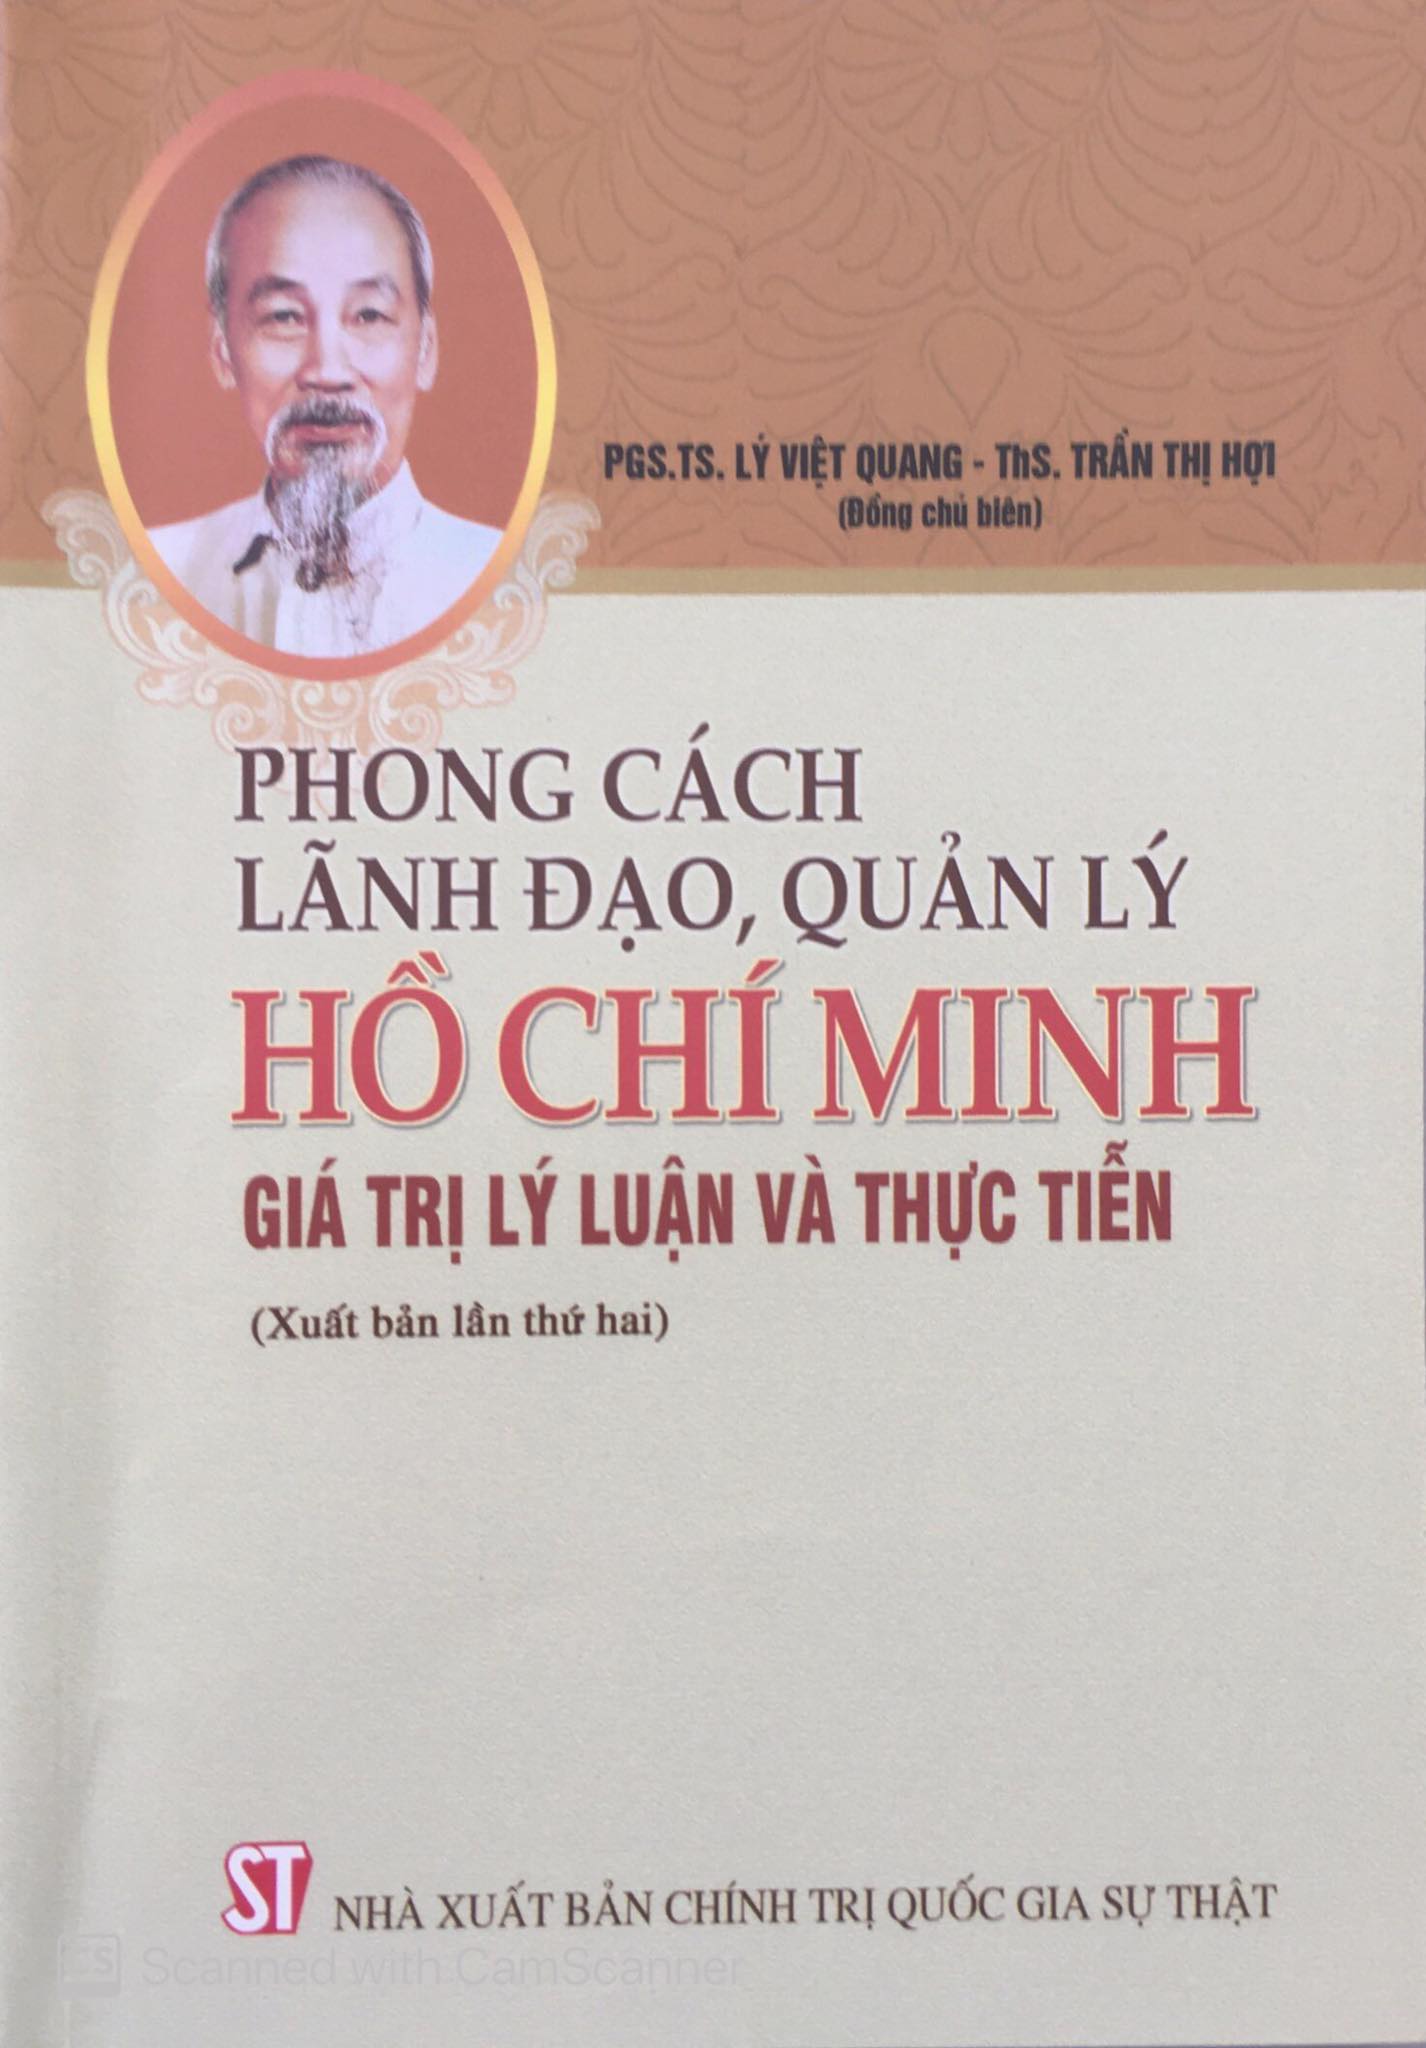 Phong cách lãnh đạo, quản lý Hồ Chí Minh - Giá trị lý luận và thực tiễn (Xuất bản lần thứ hai)